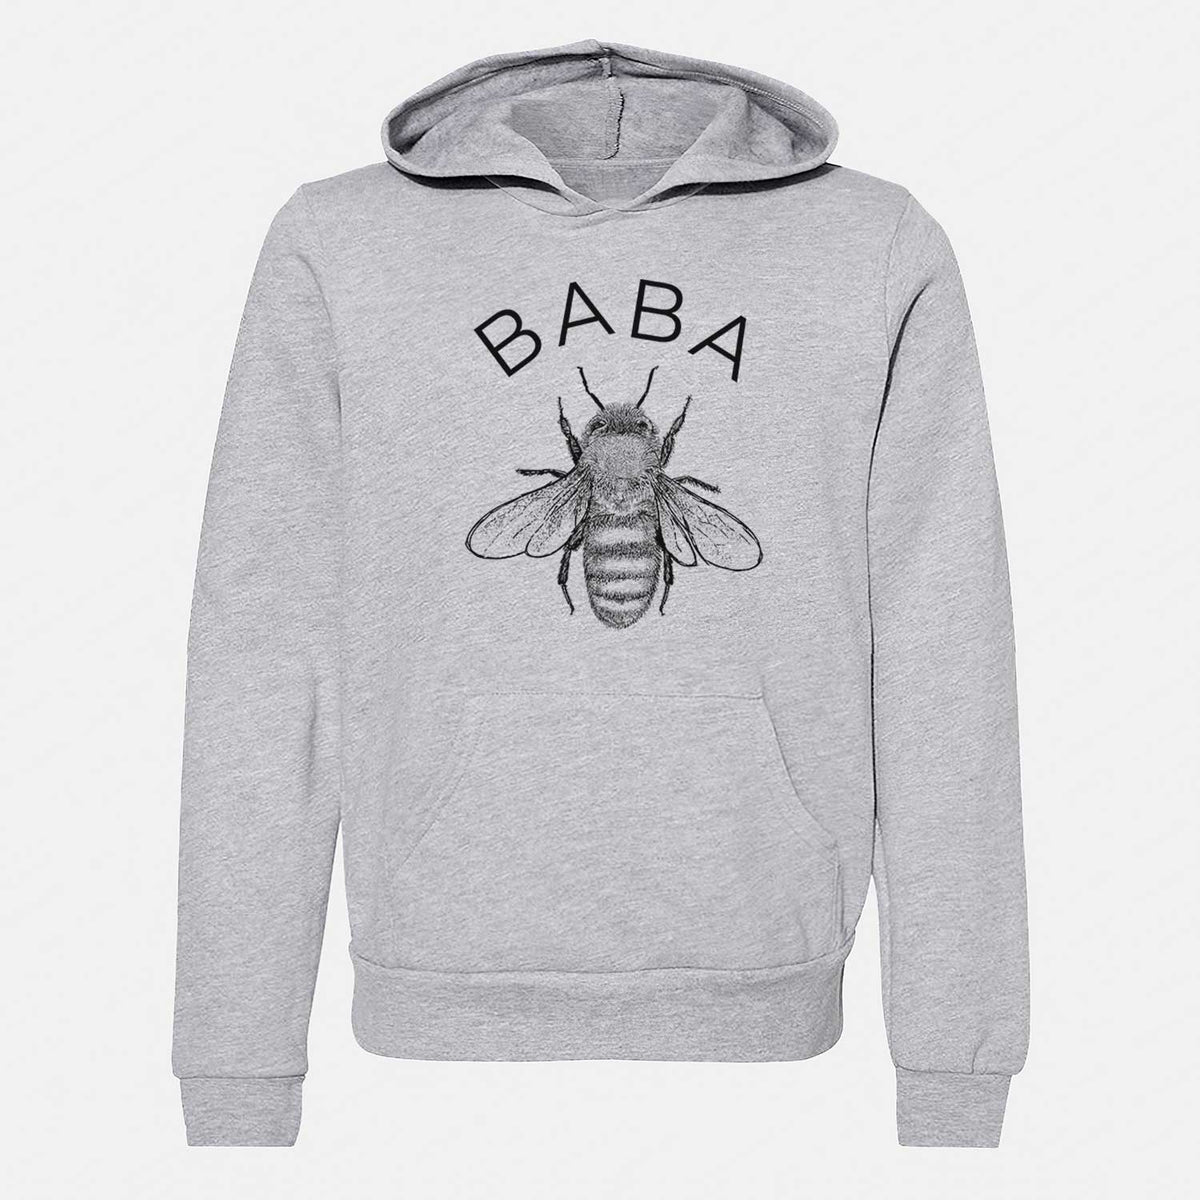 Baba Bee - Youth Hoodie Sweatshirt